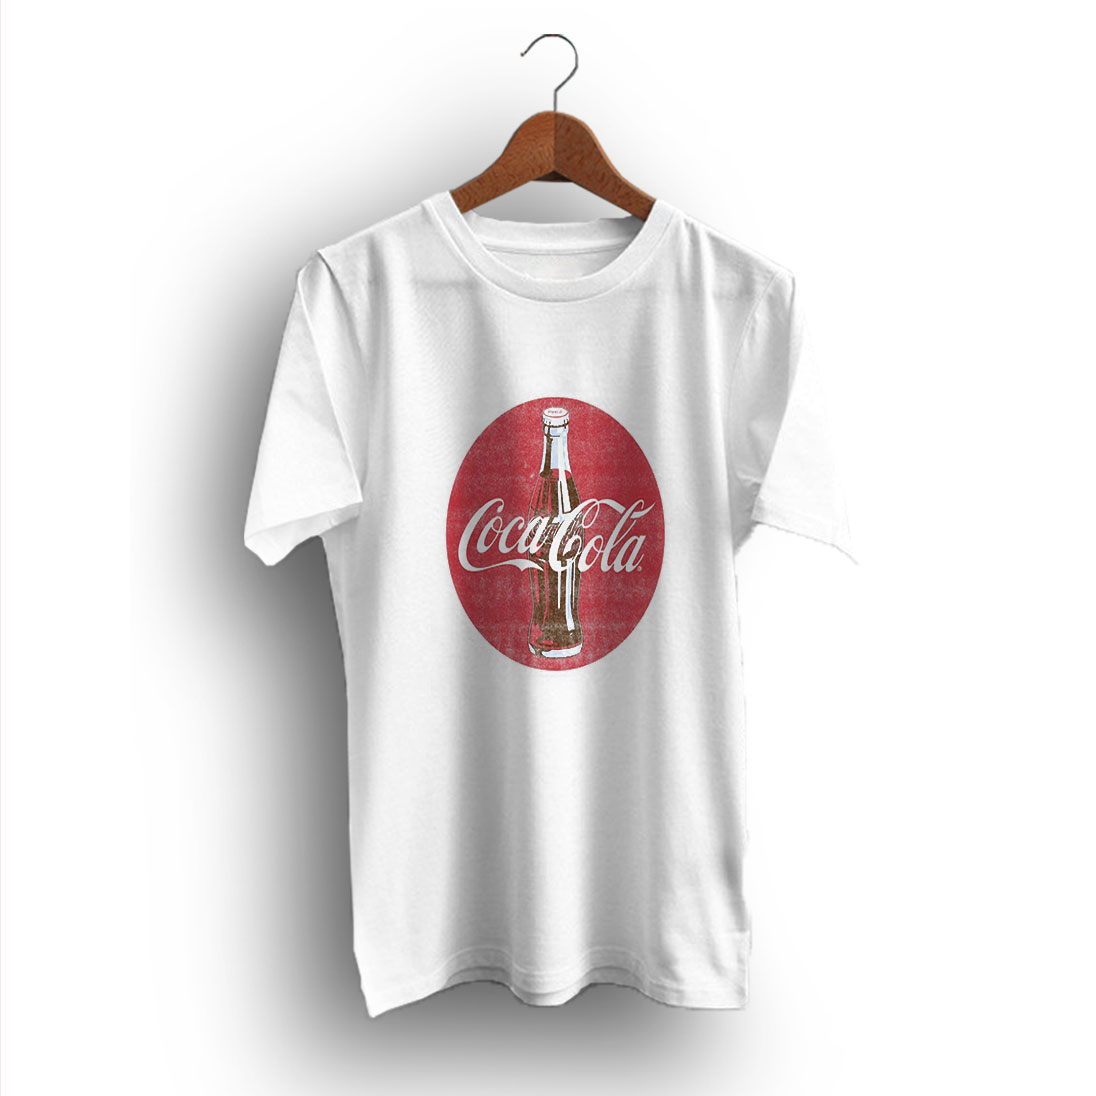 Design Coca-Cola Vintage T-Shirt - Ideas Shirt - Inspired Shirt Design Bigvero